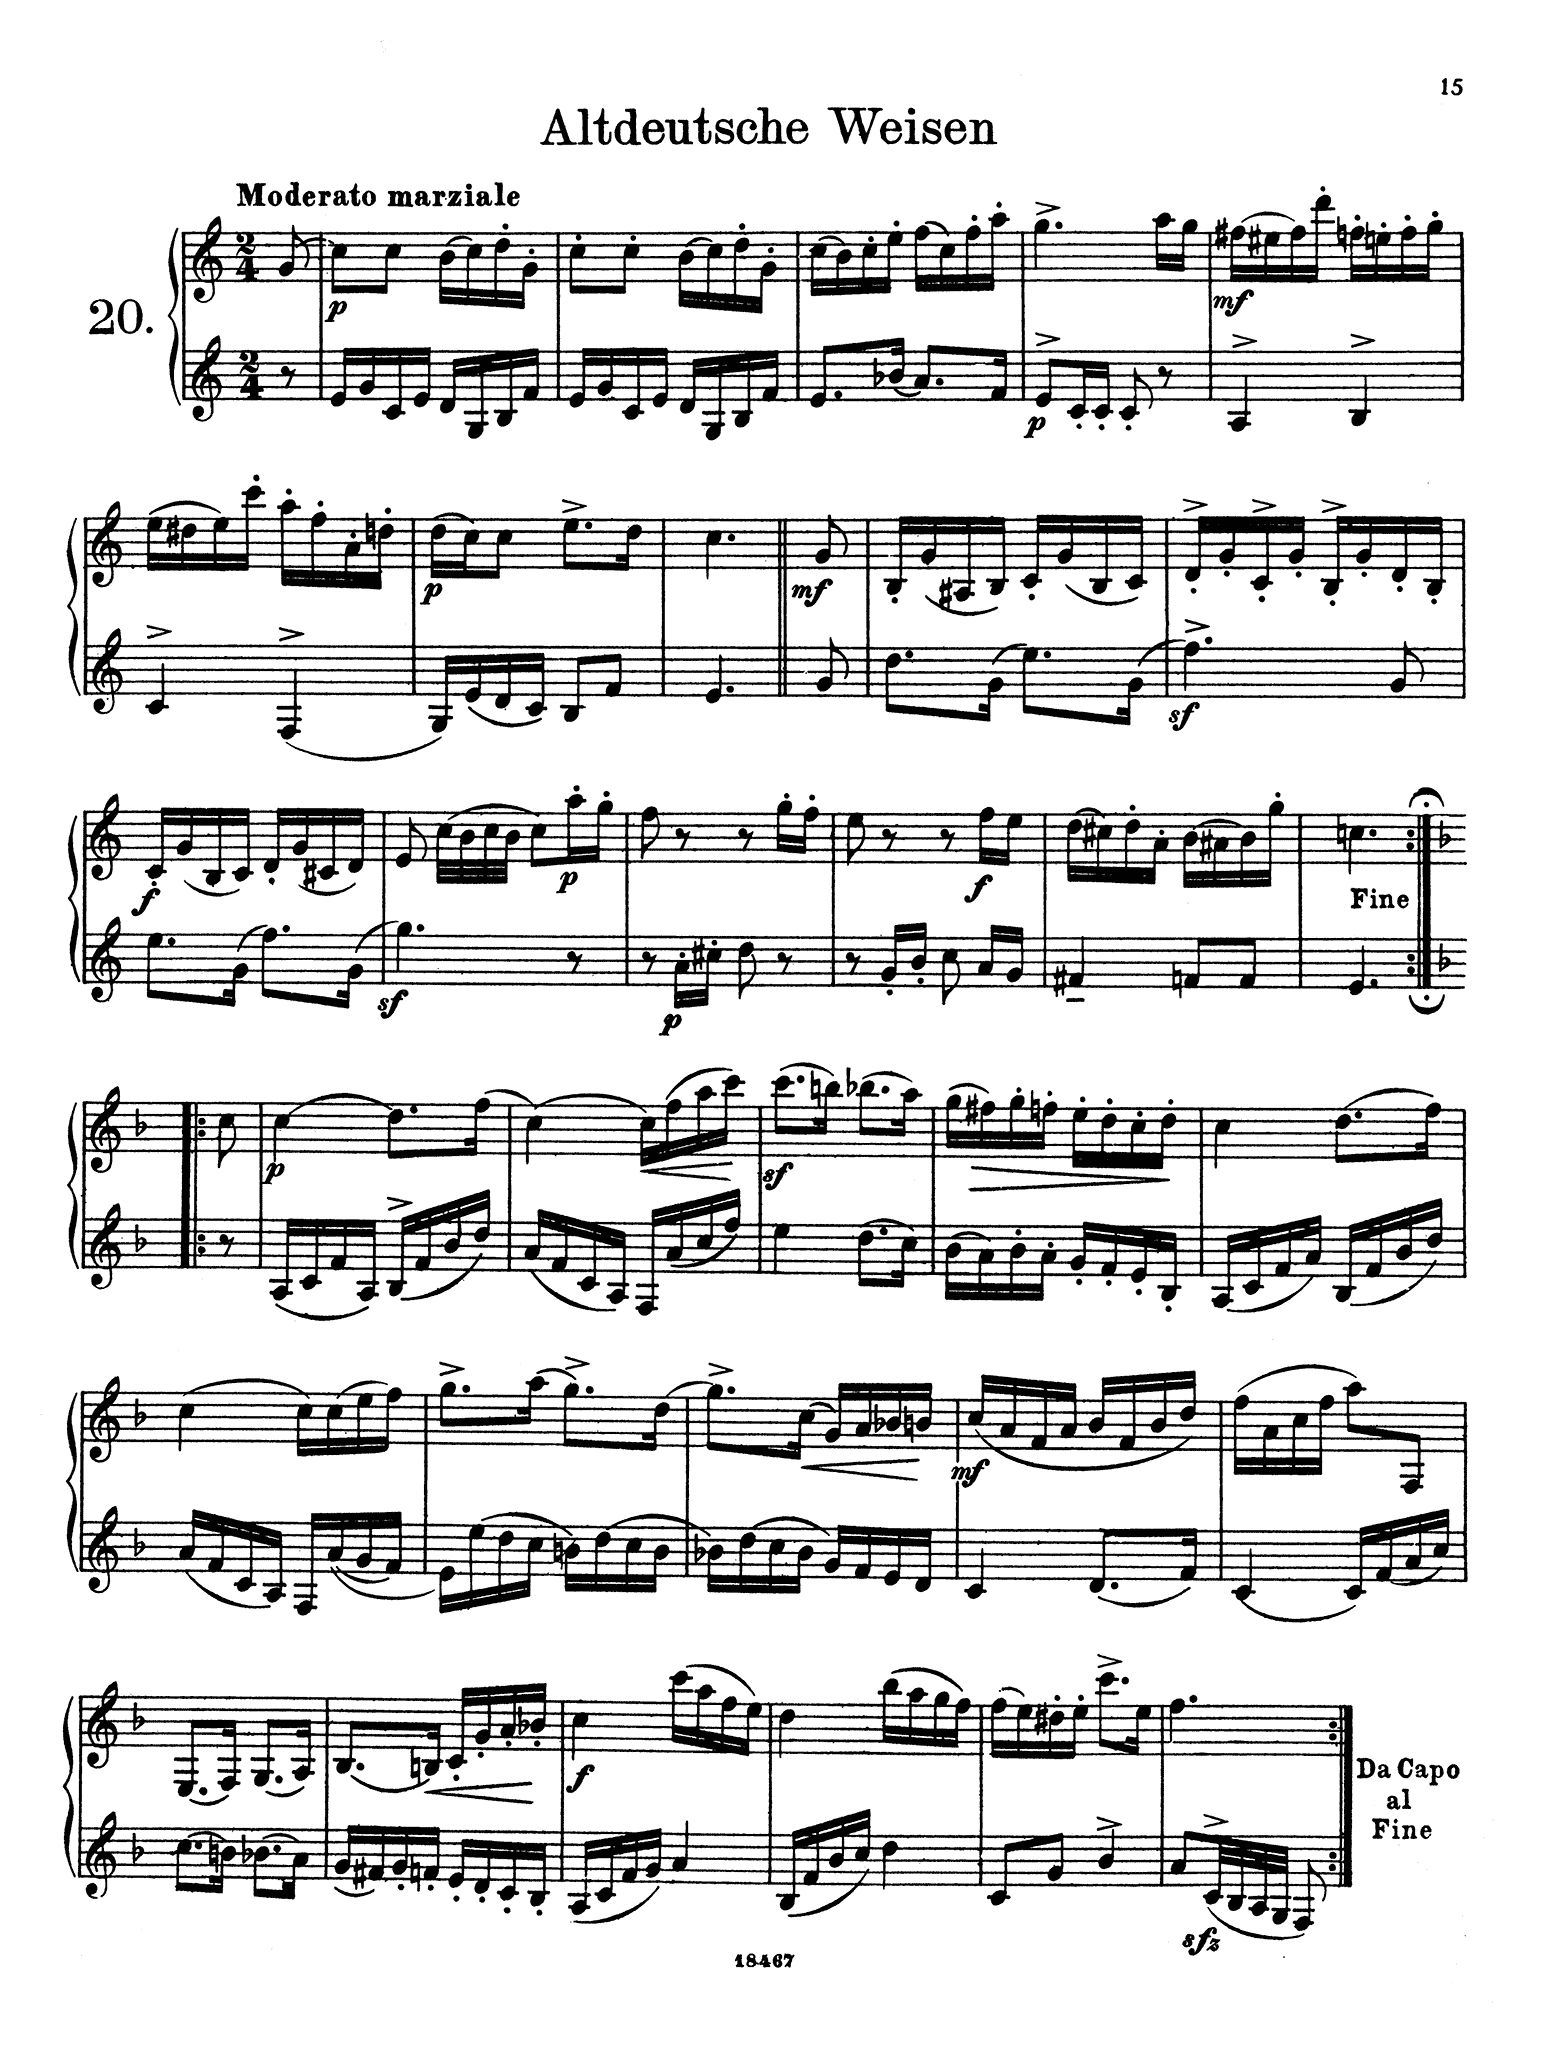 Wiedemann Clarinet Studies, Book 2 page 15